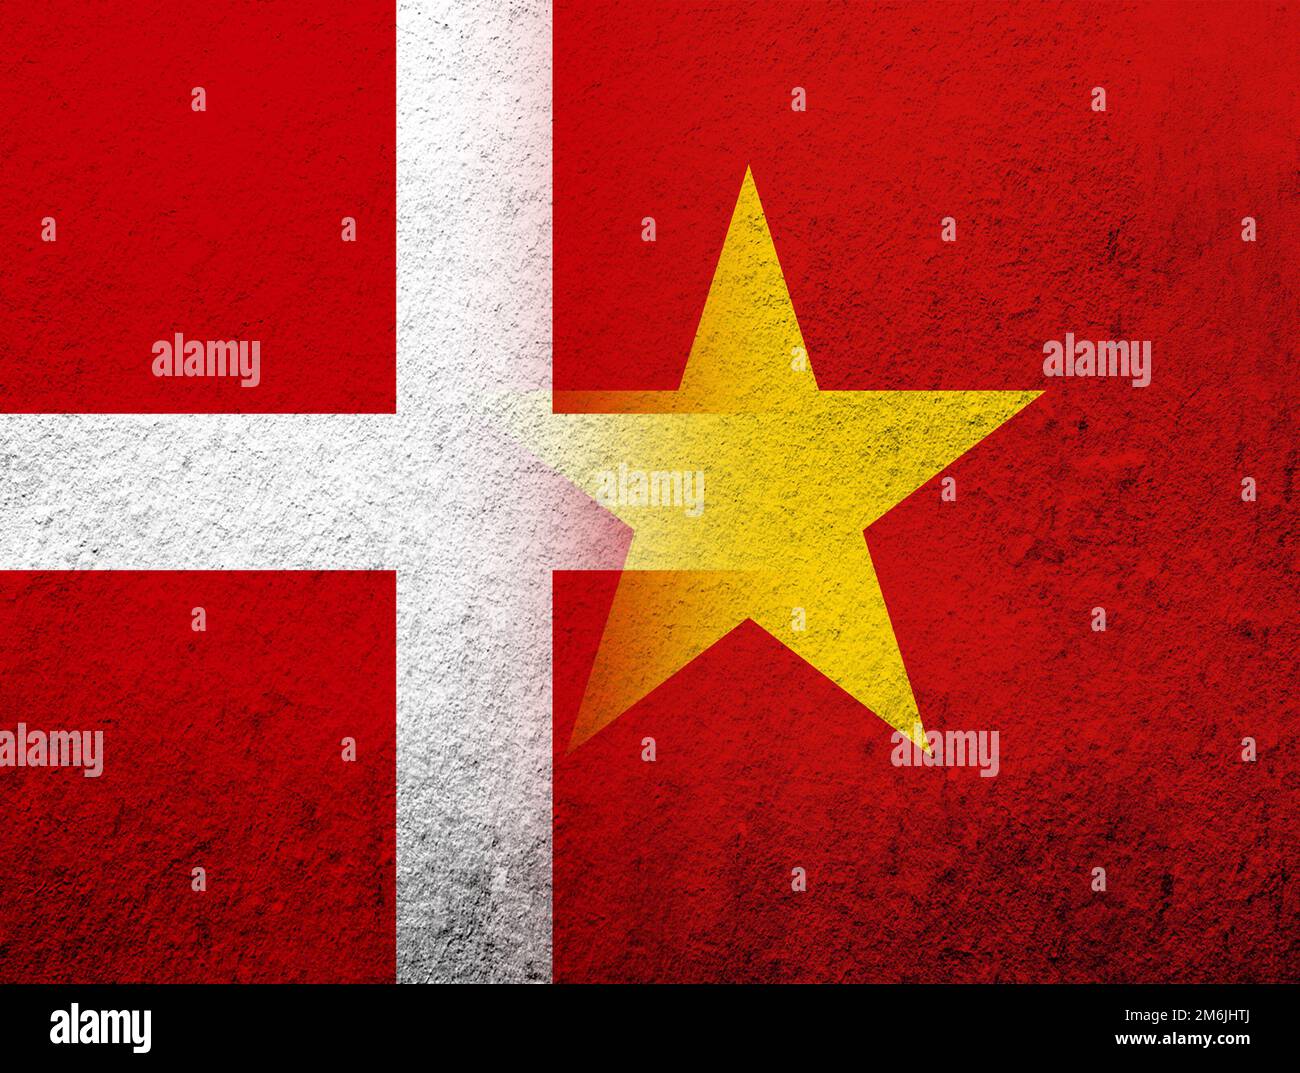 Die Nationalflagge des Königreichs Dänemark mit der Nationalflagge der Sozialistischen Republik Vietnam. Grunge Hintergrund Stockfoto